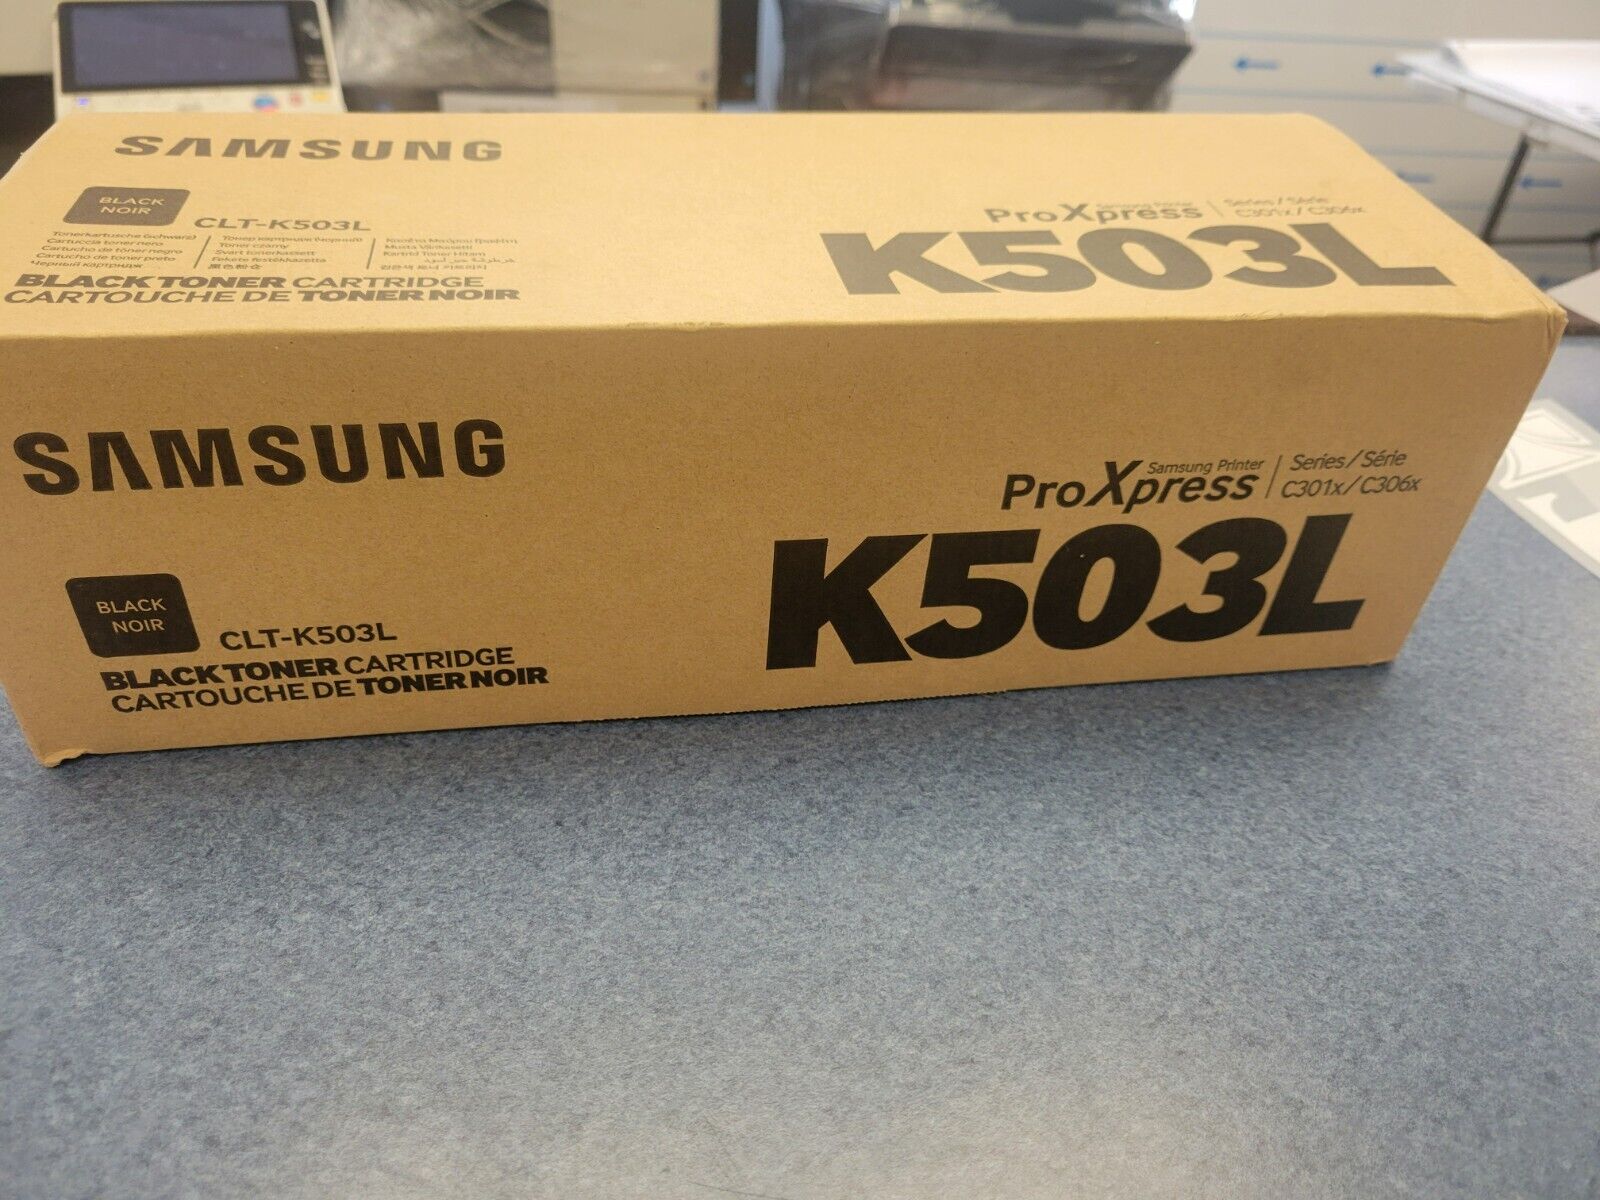 Samsung 503L Toner Ctg CLT-K503L/XAA, Black for Samsung ProXpress C3010